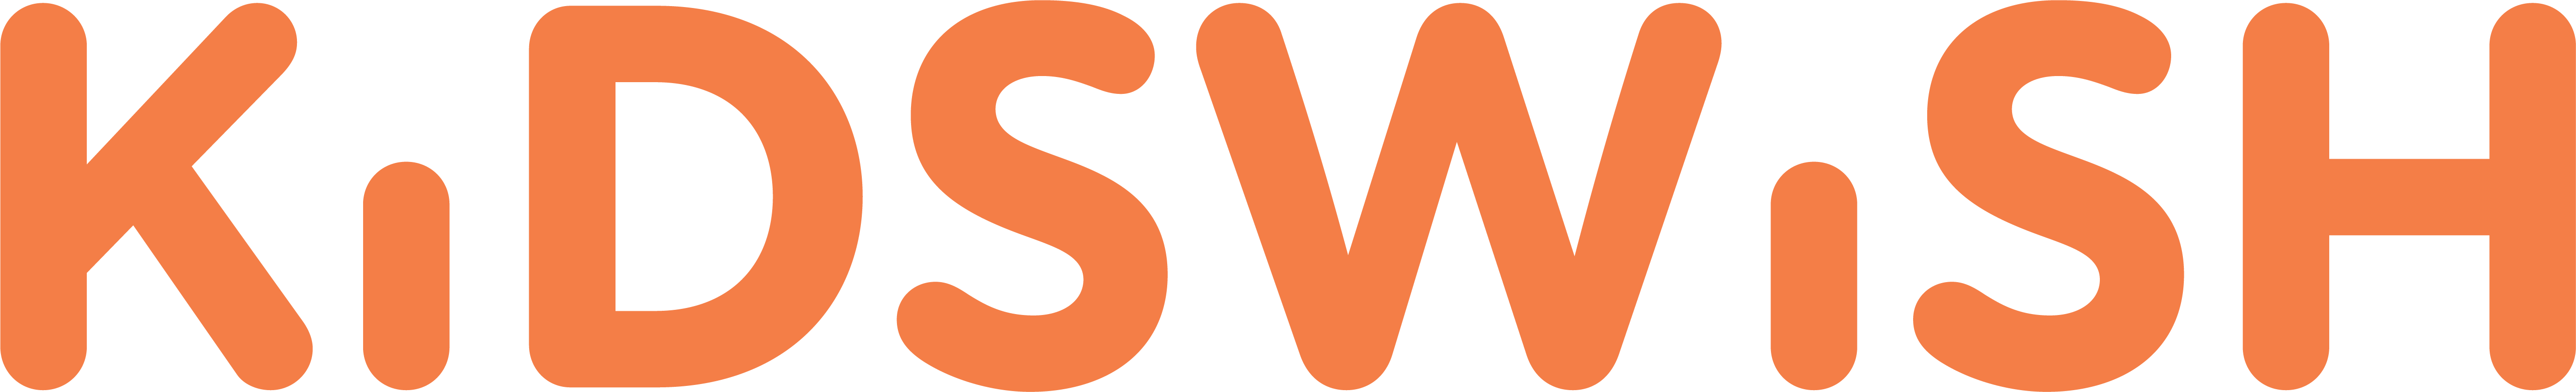 kidswish logo orange white